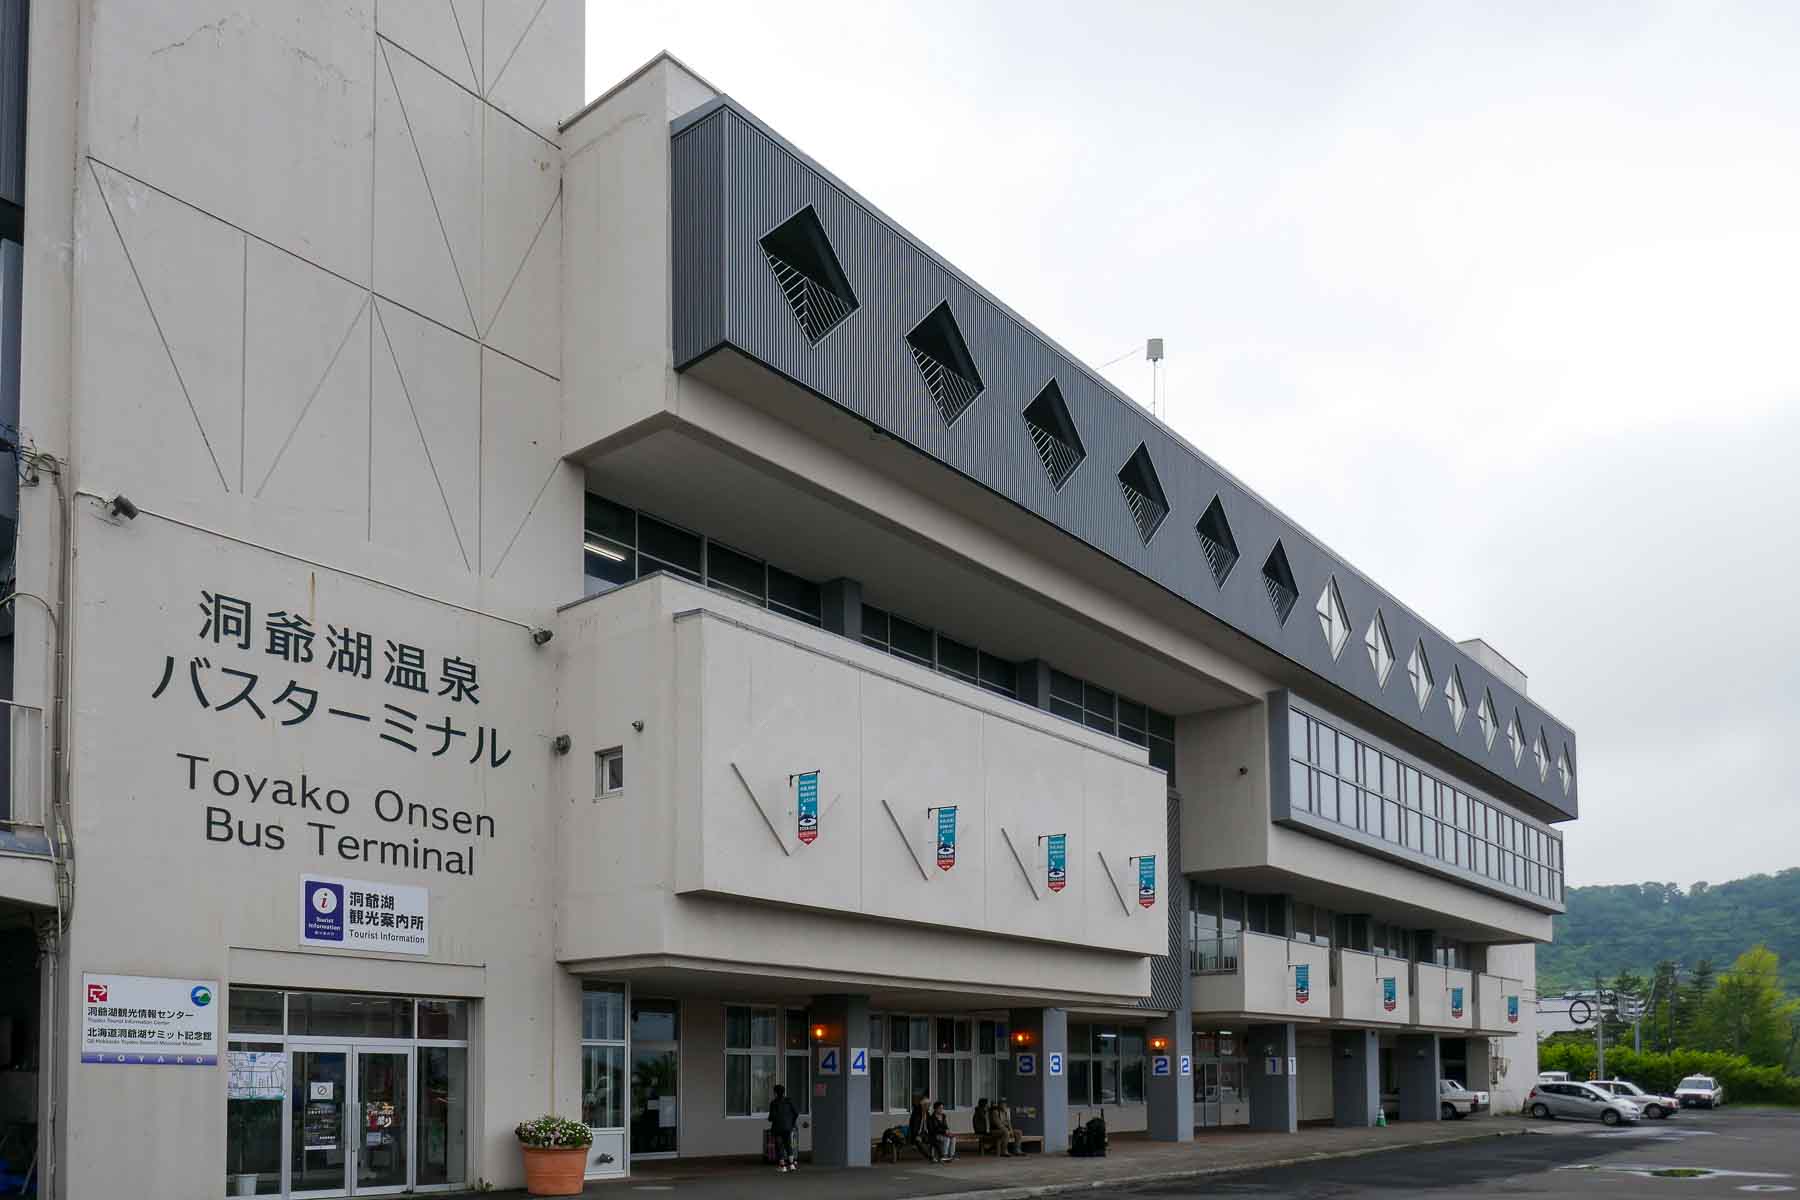 Toyako Onsen bus terminal